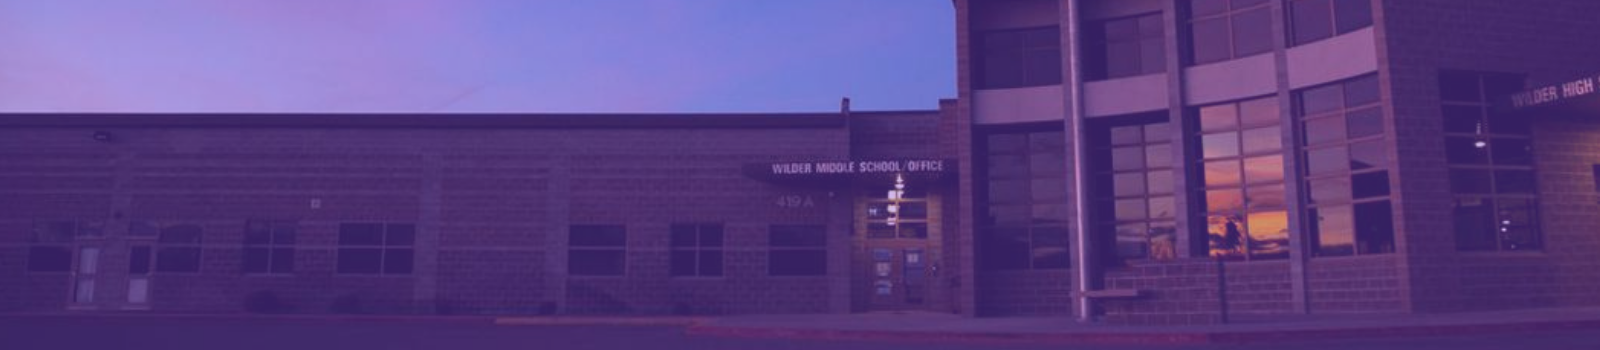 Photo of Wilder High School